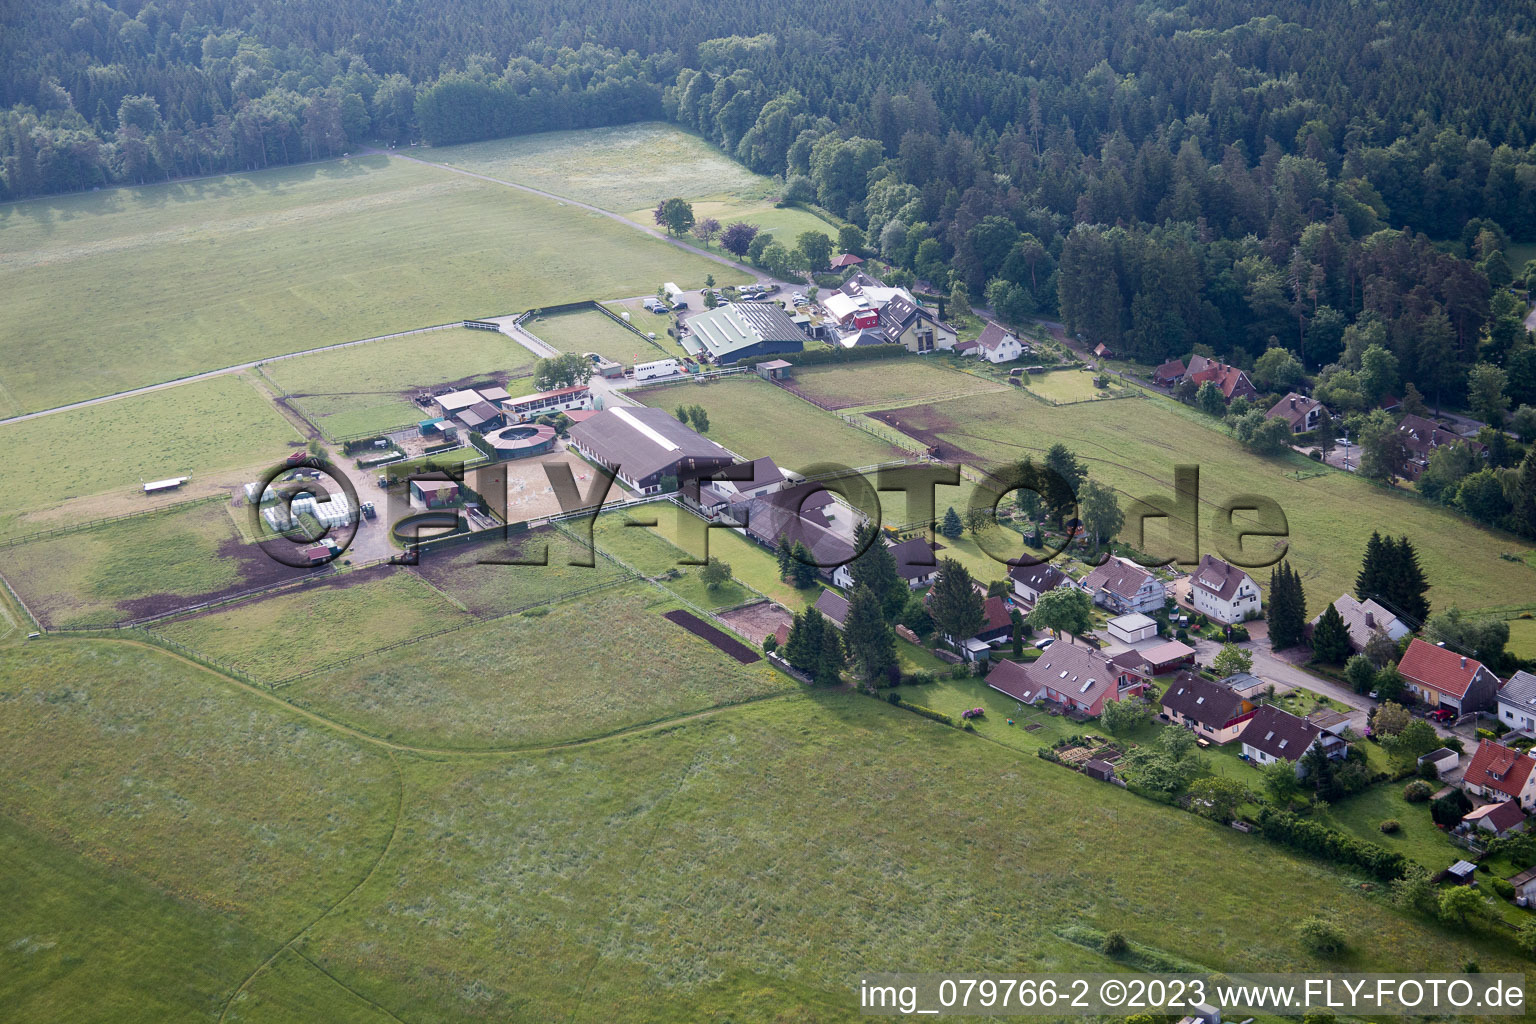 Dobel im Bundesland Baden-Württemberg, Deutschland von der Drohne aus gesehen